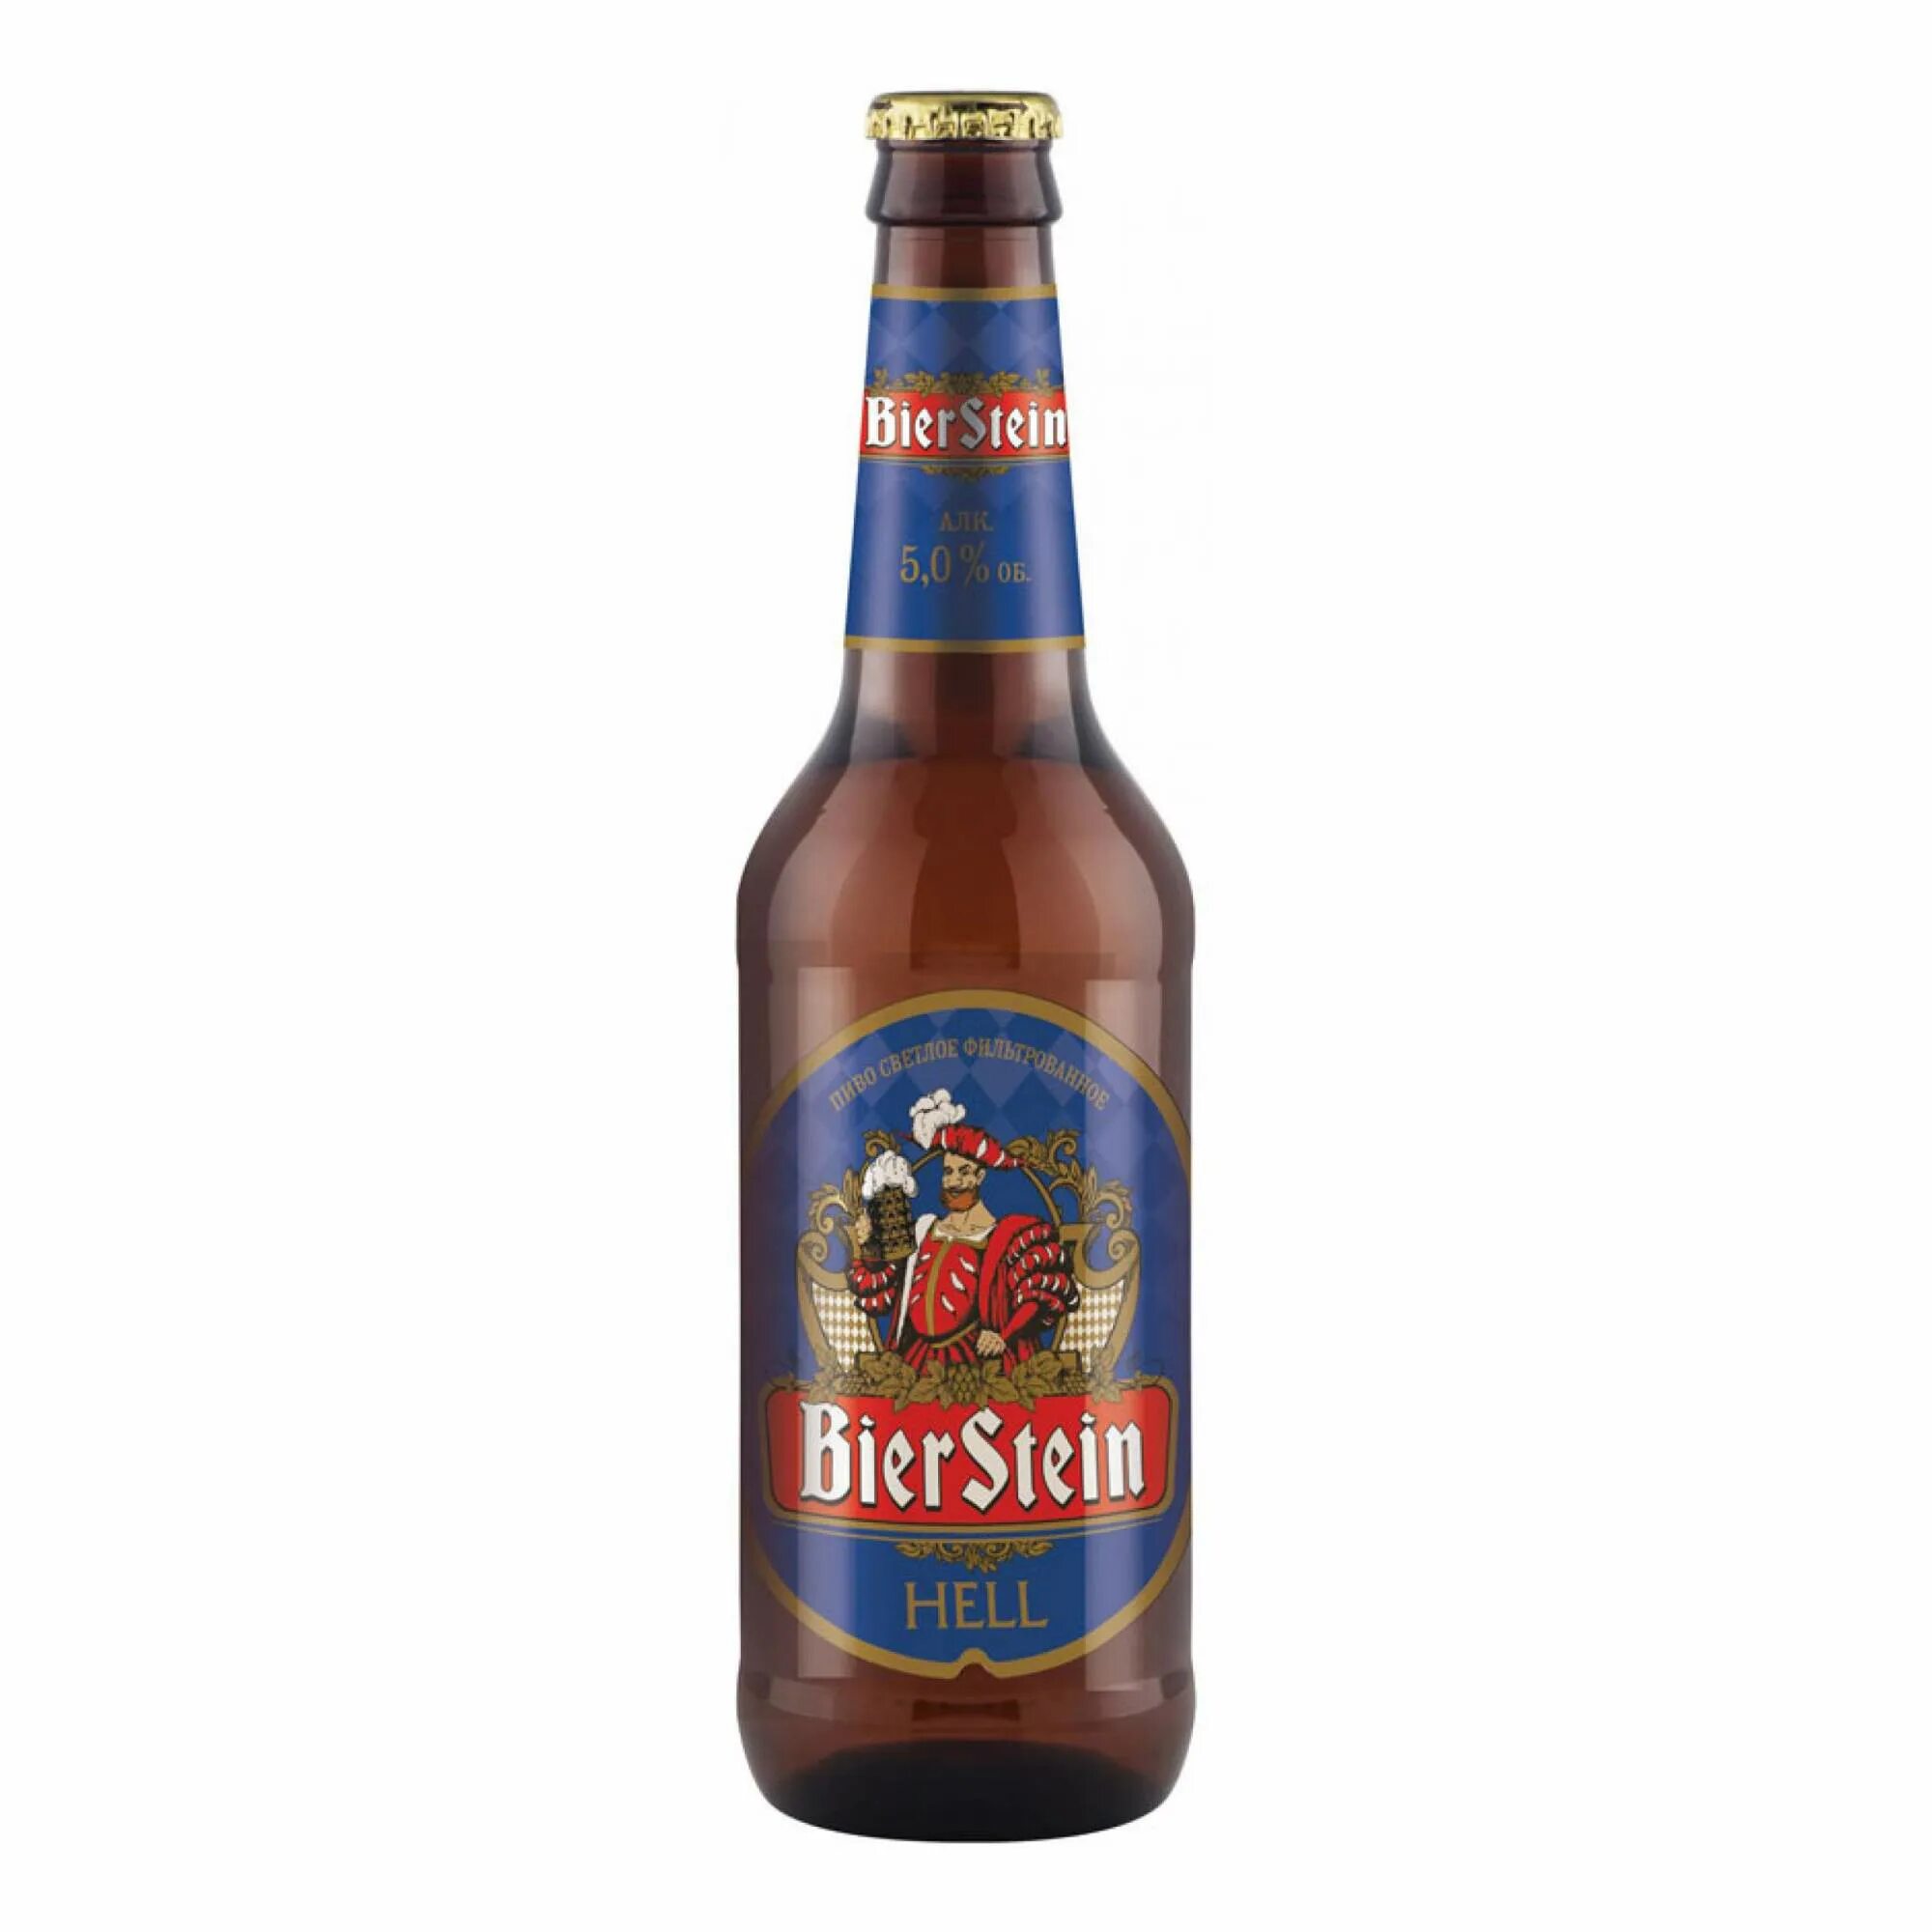 Hell пиво купить. Пиво Bierstein Hell. Bierstein пиво Hell 0.45. Bierstein Hell пиво светлое фильтрованное. Пиво «Бирштайн» («Bierstein»).